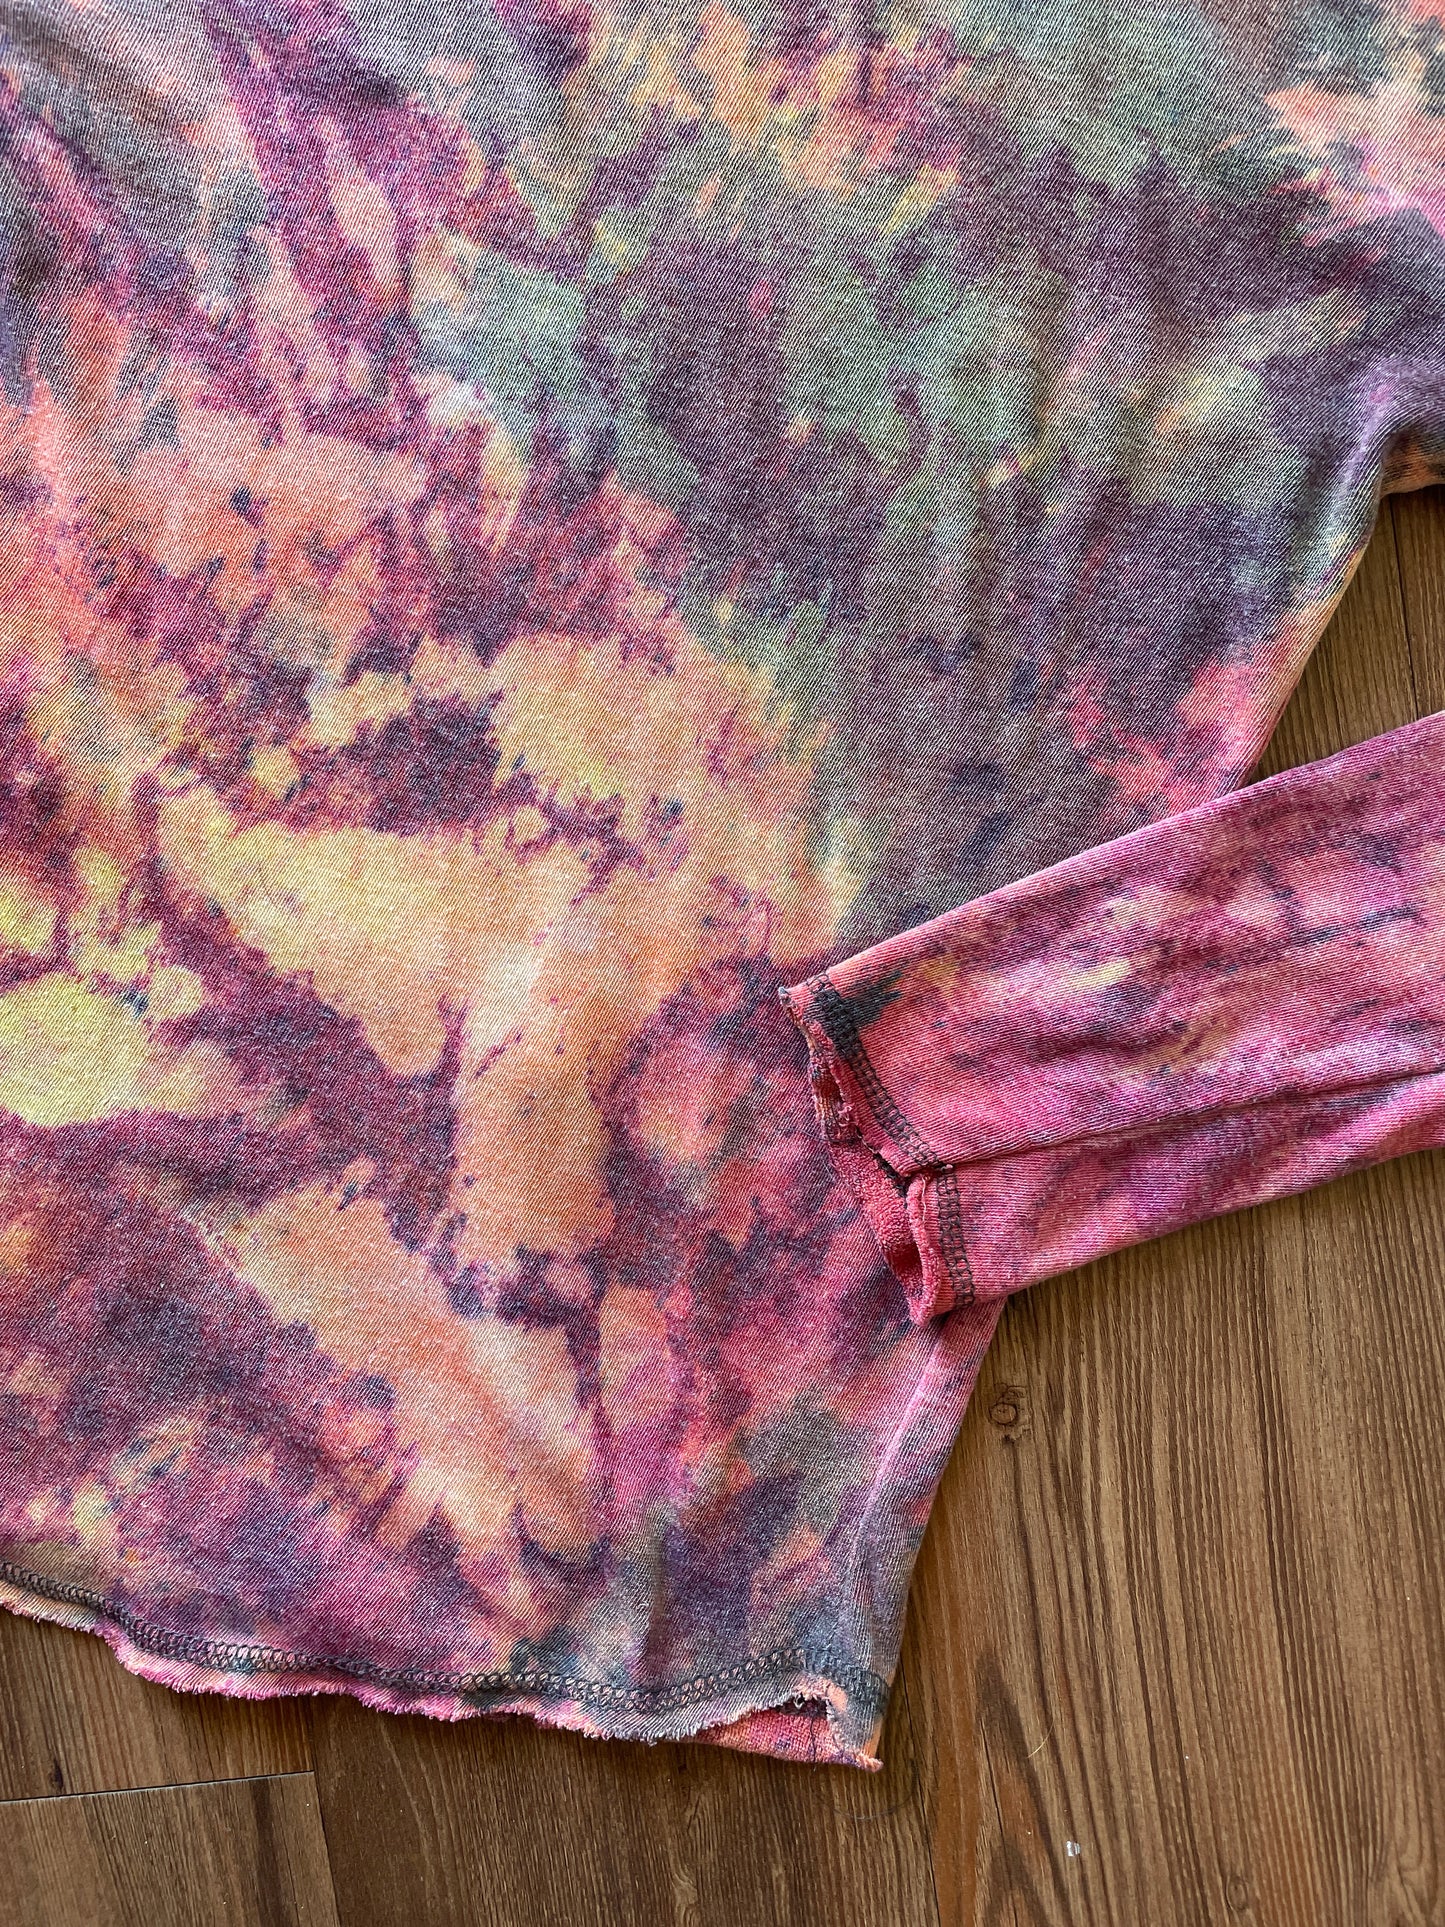 Medium Women’s Buc-ee’s Handmade Tie Dye Hooded Shirt | Bucee Beaver Pink and Orange Tie Dye Long Sleeve